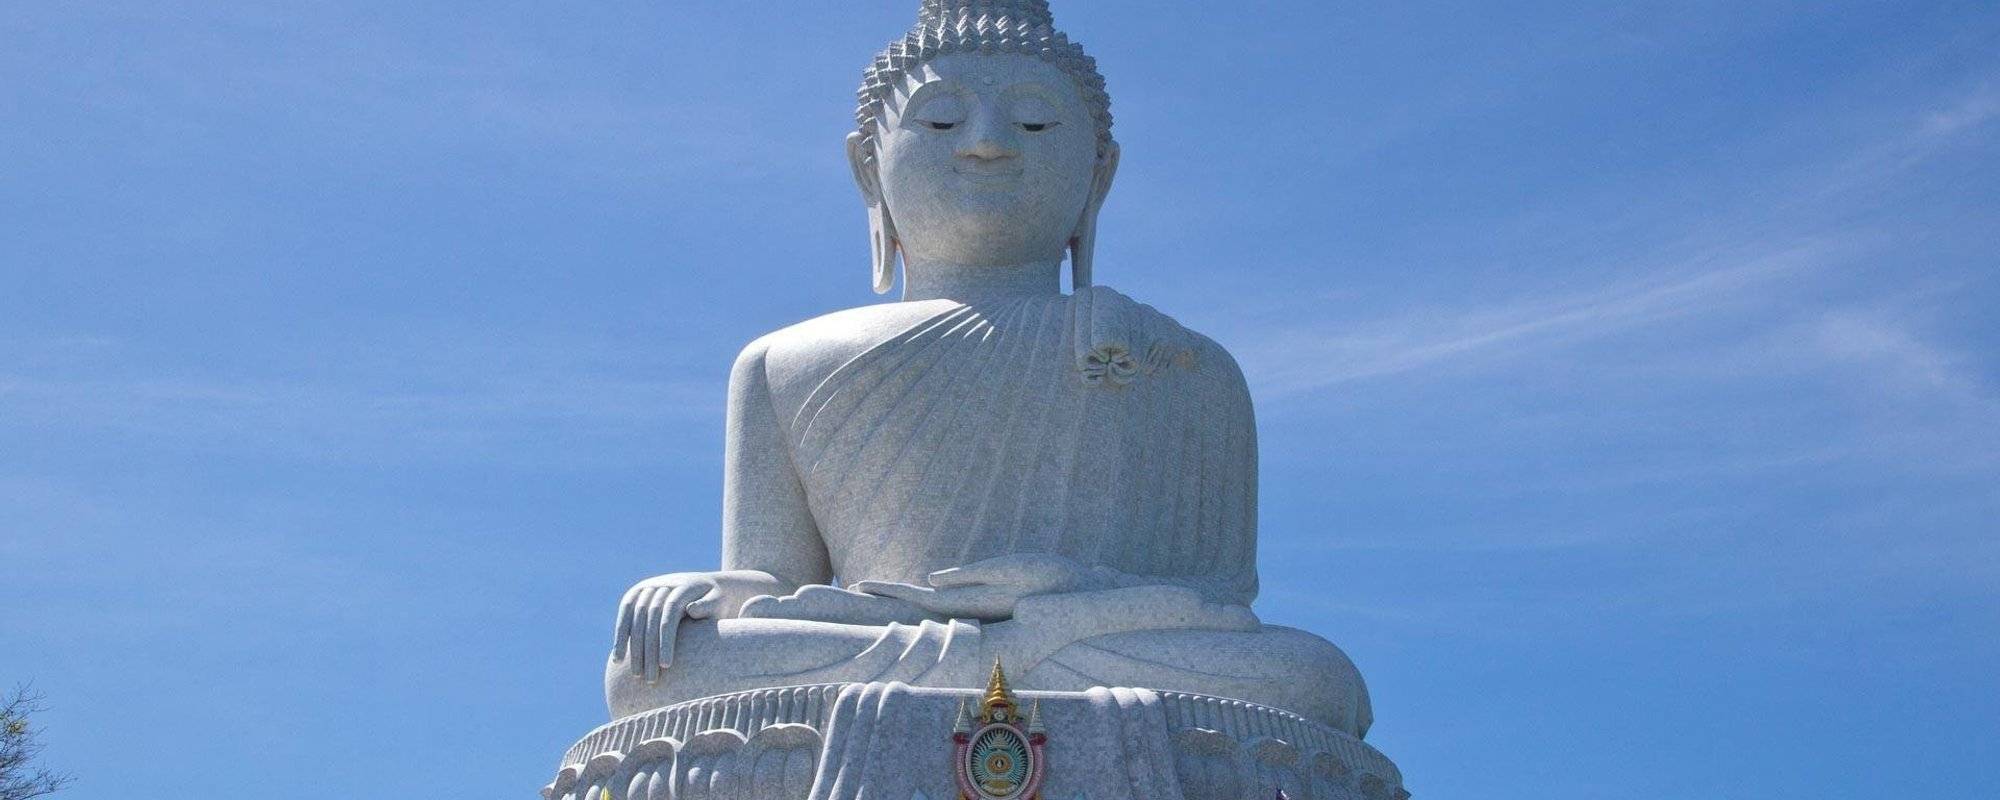 Phuket - my visit to the Big Buddha